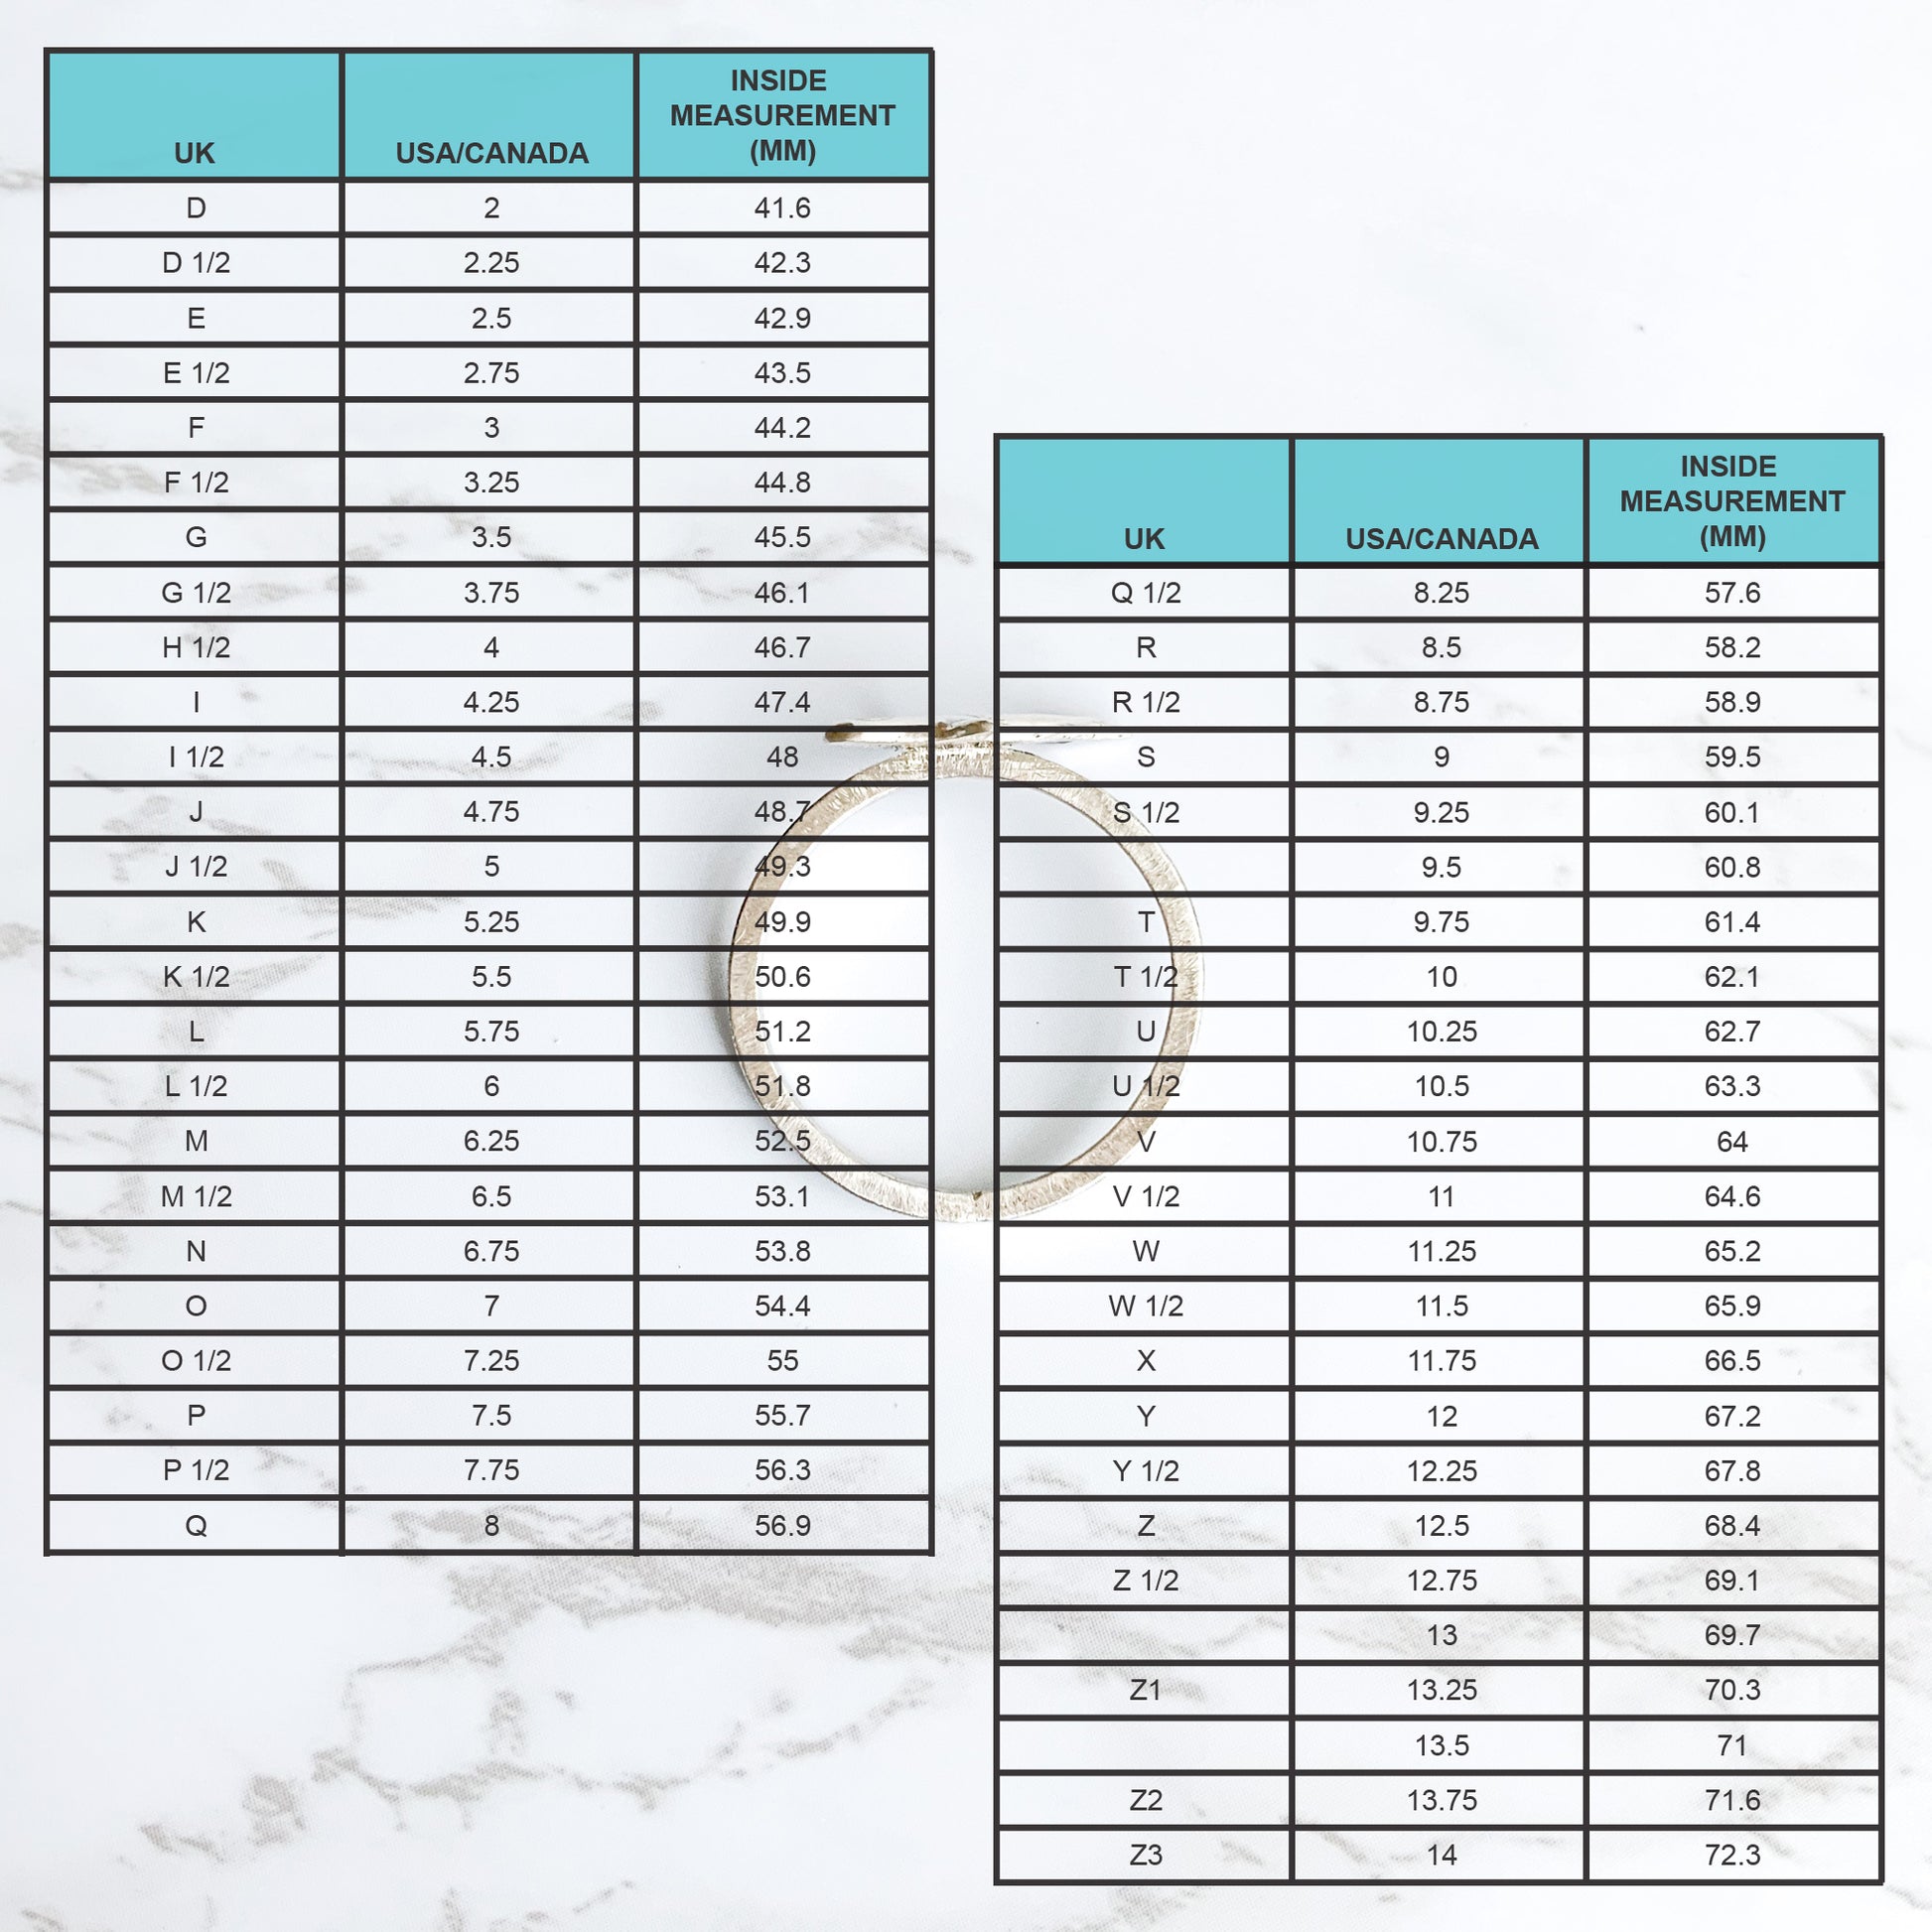 International ring size cconversion chart